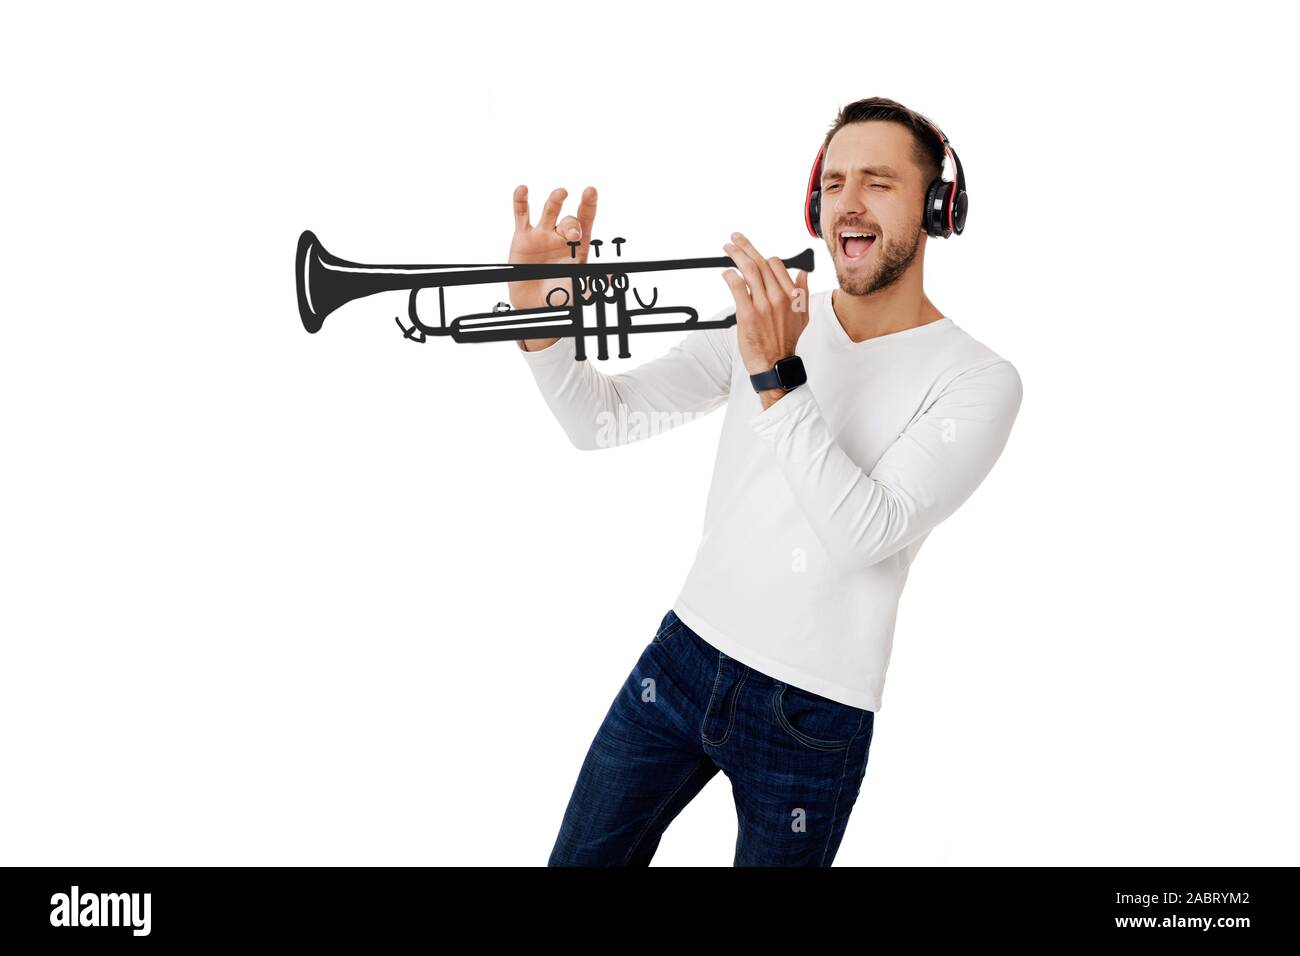 Guy playing trumpet Banque d'images détourées - Alamy